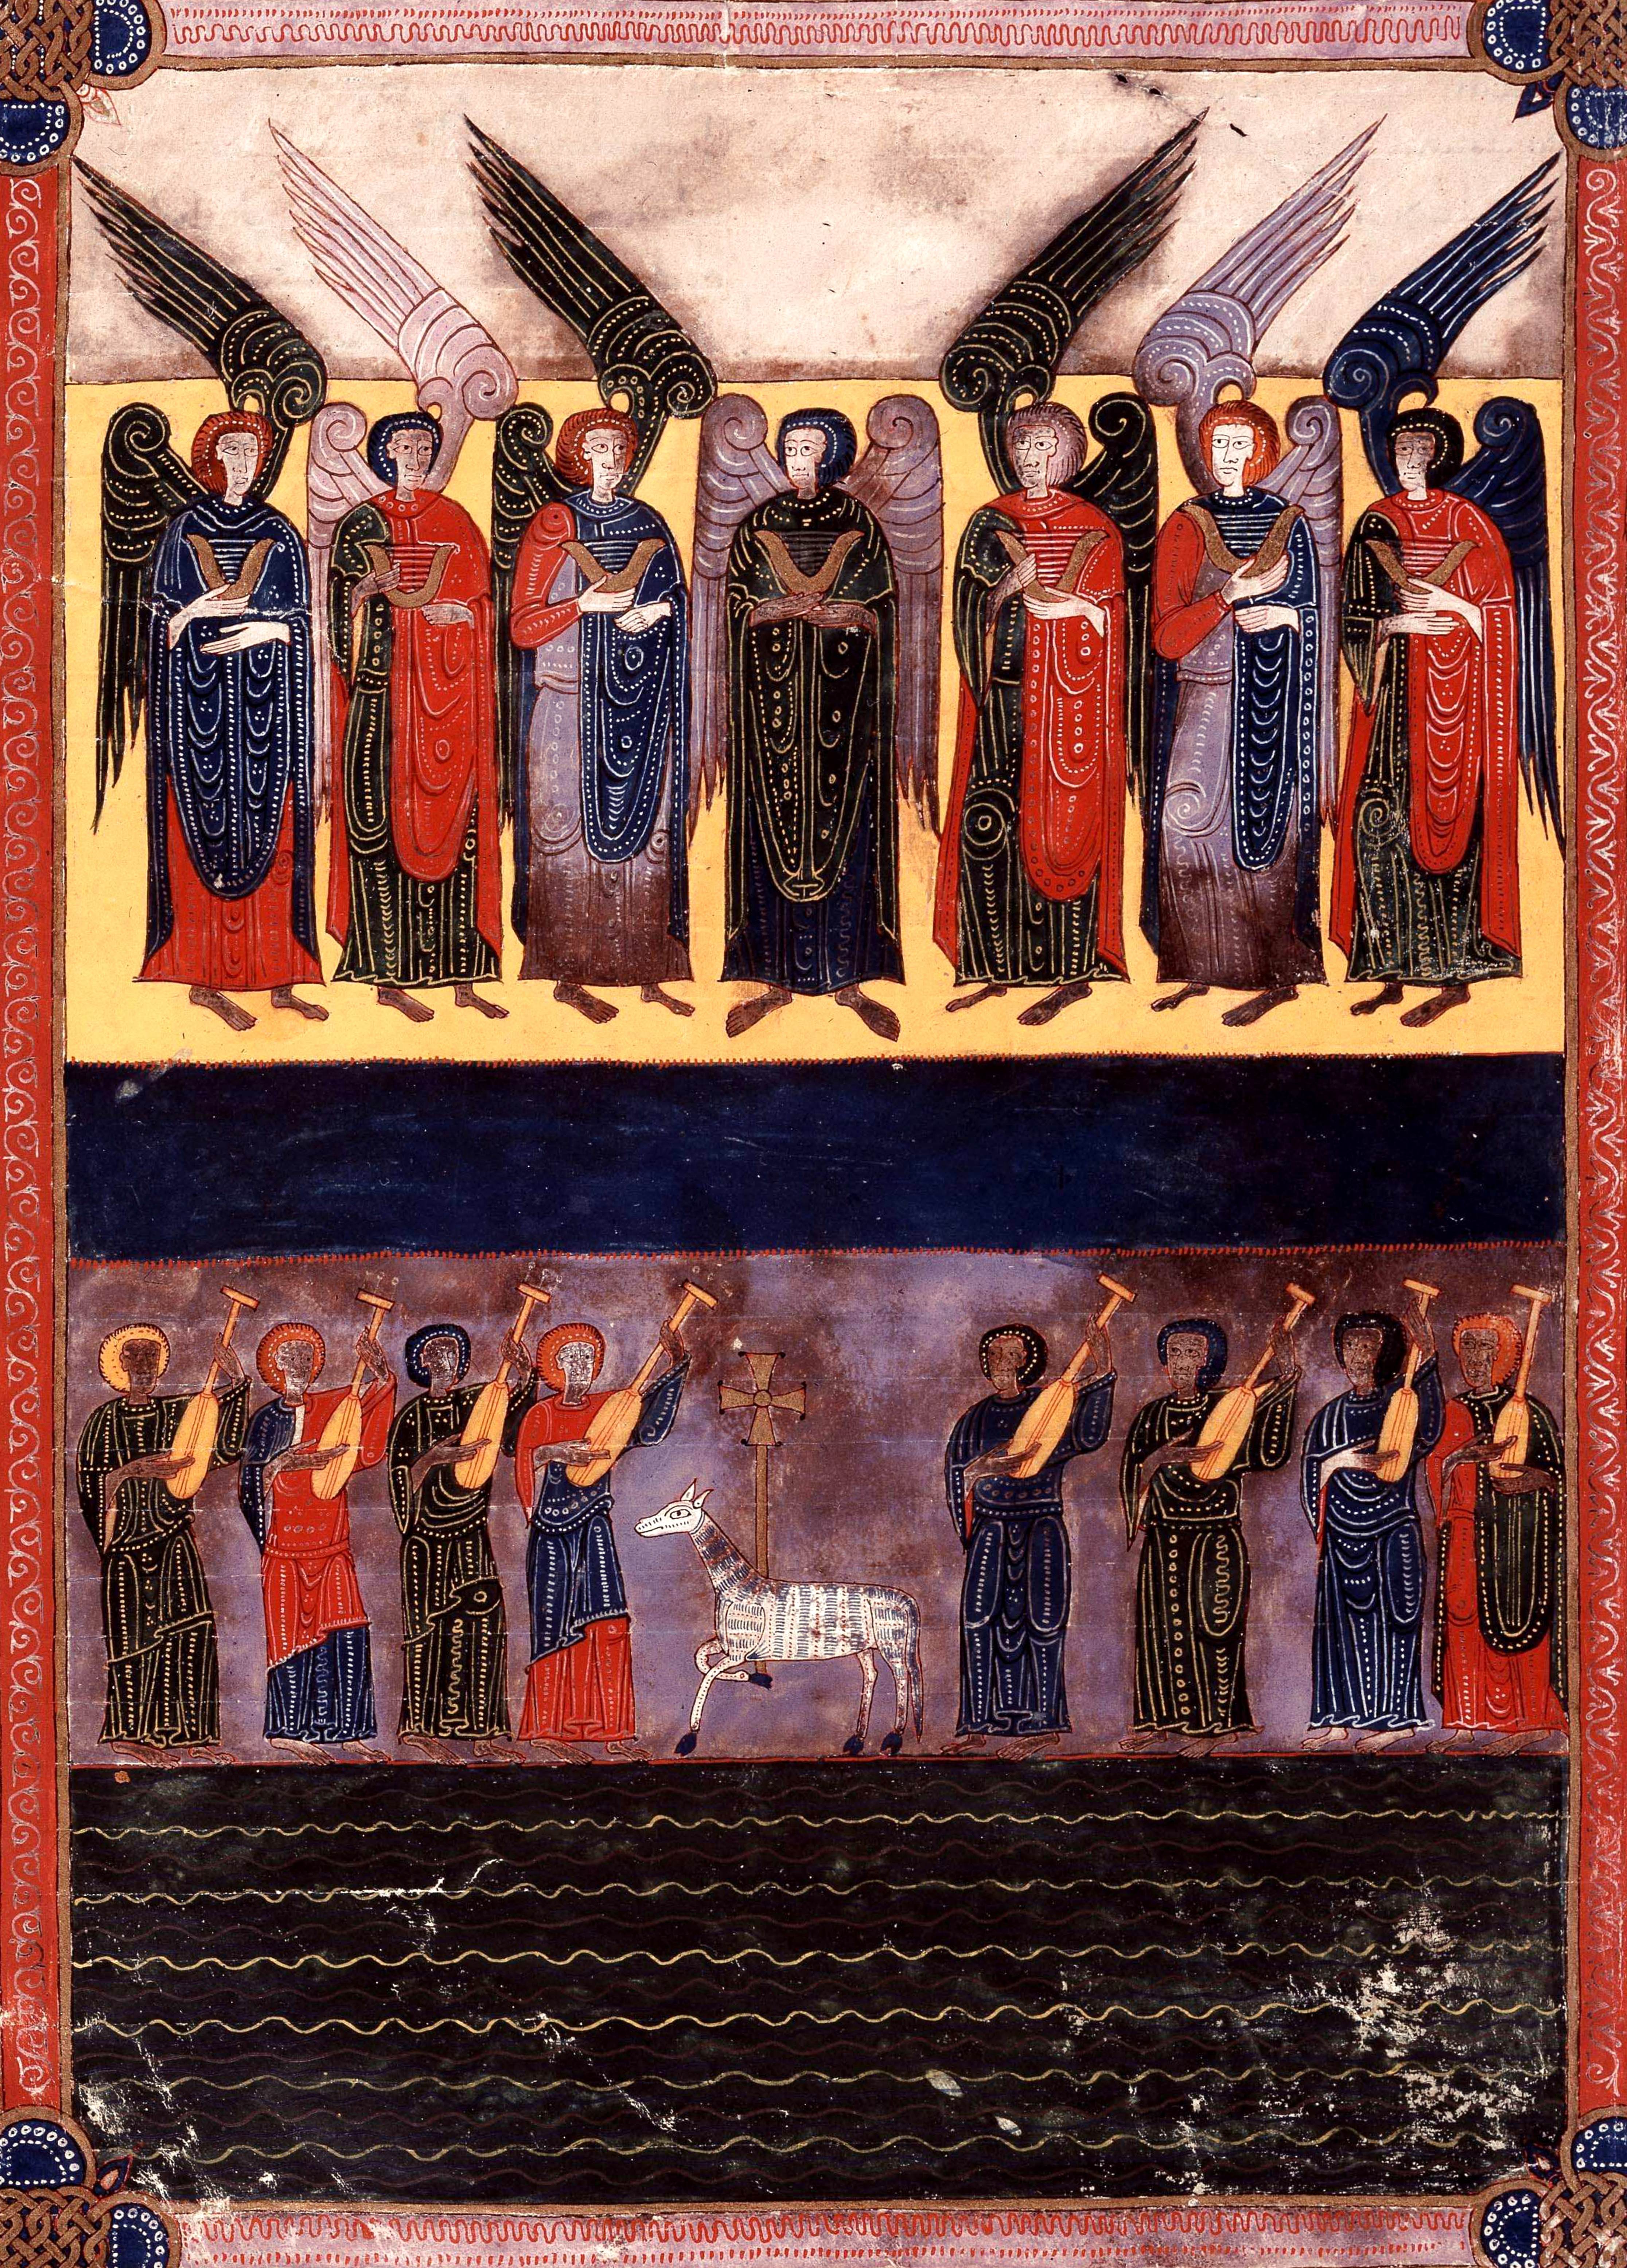 Beatus de Facundus, p. 423 – Les sept anges portant les sept fléaux, la mer de cristal. Ceux qui ont triomphé de la Bête louent l’Agneau accompagnés de la harpe (Ap 15, 1-4).